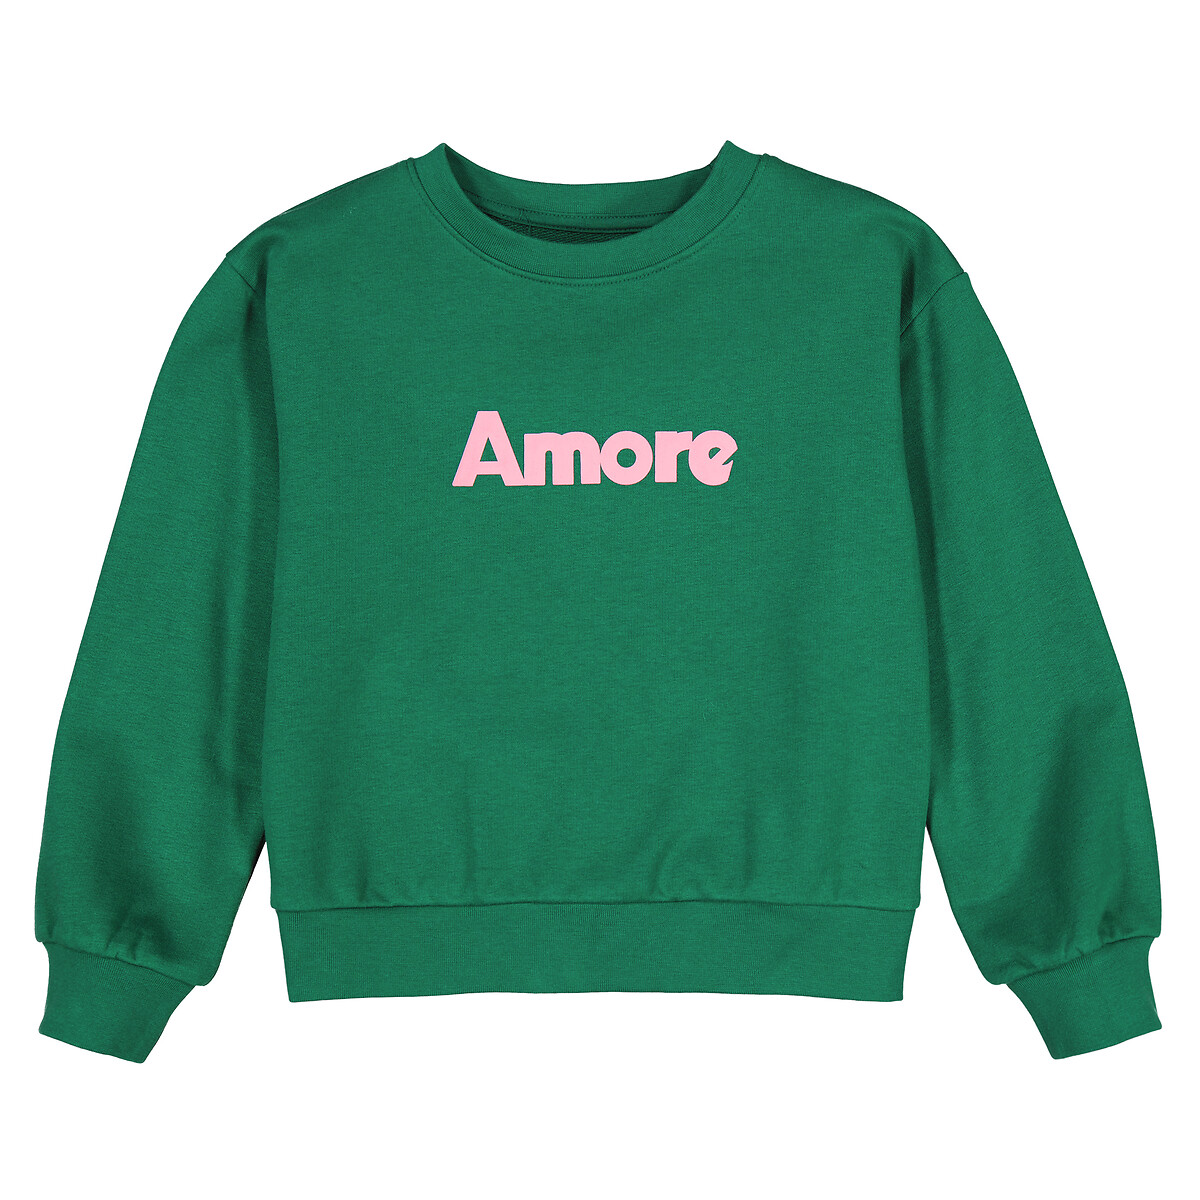 Свитшот с круглым вырезом из мольтона с надписью Amore  9 лет - 132 см зеленый LaRedoute, размер 9 лет - 132 см - фото 3